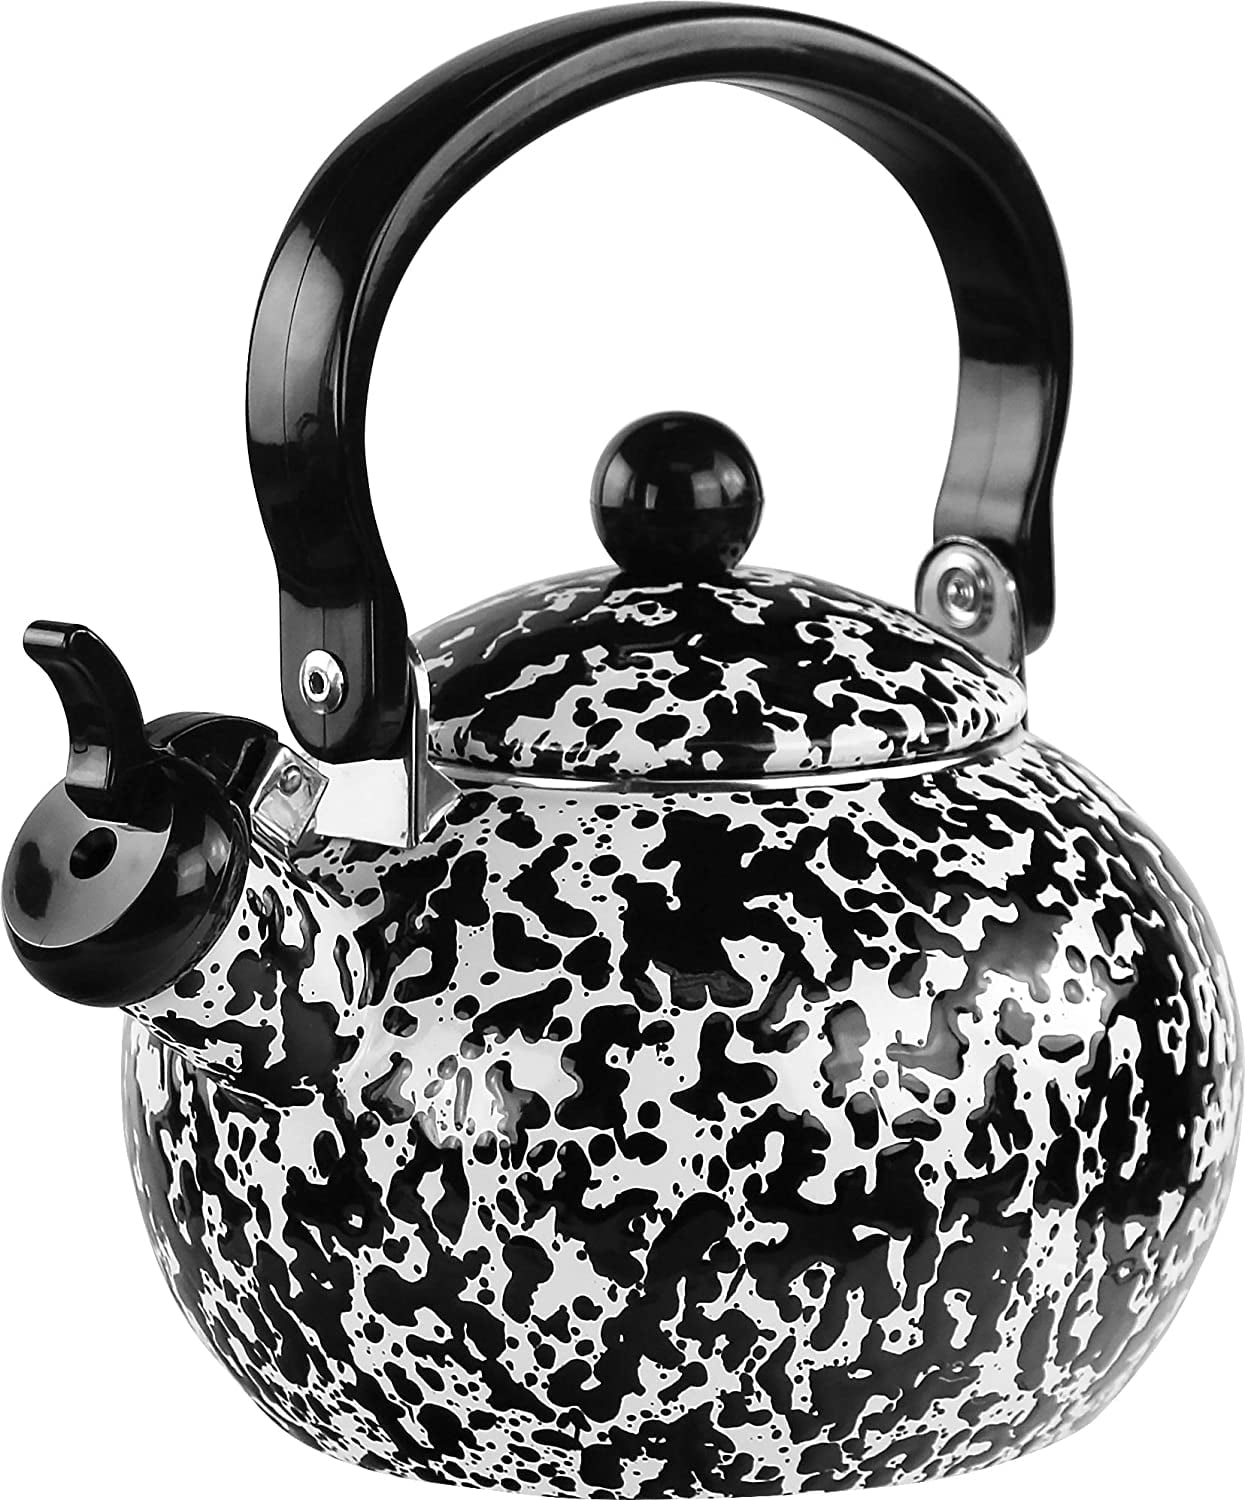 Black and White Enamel Teapot